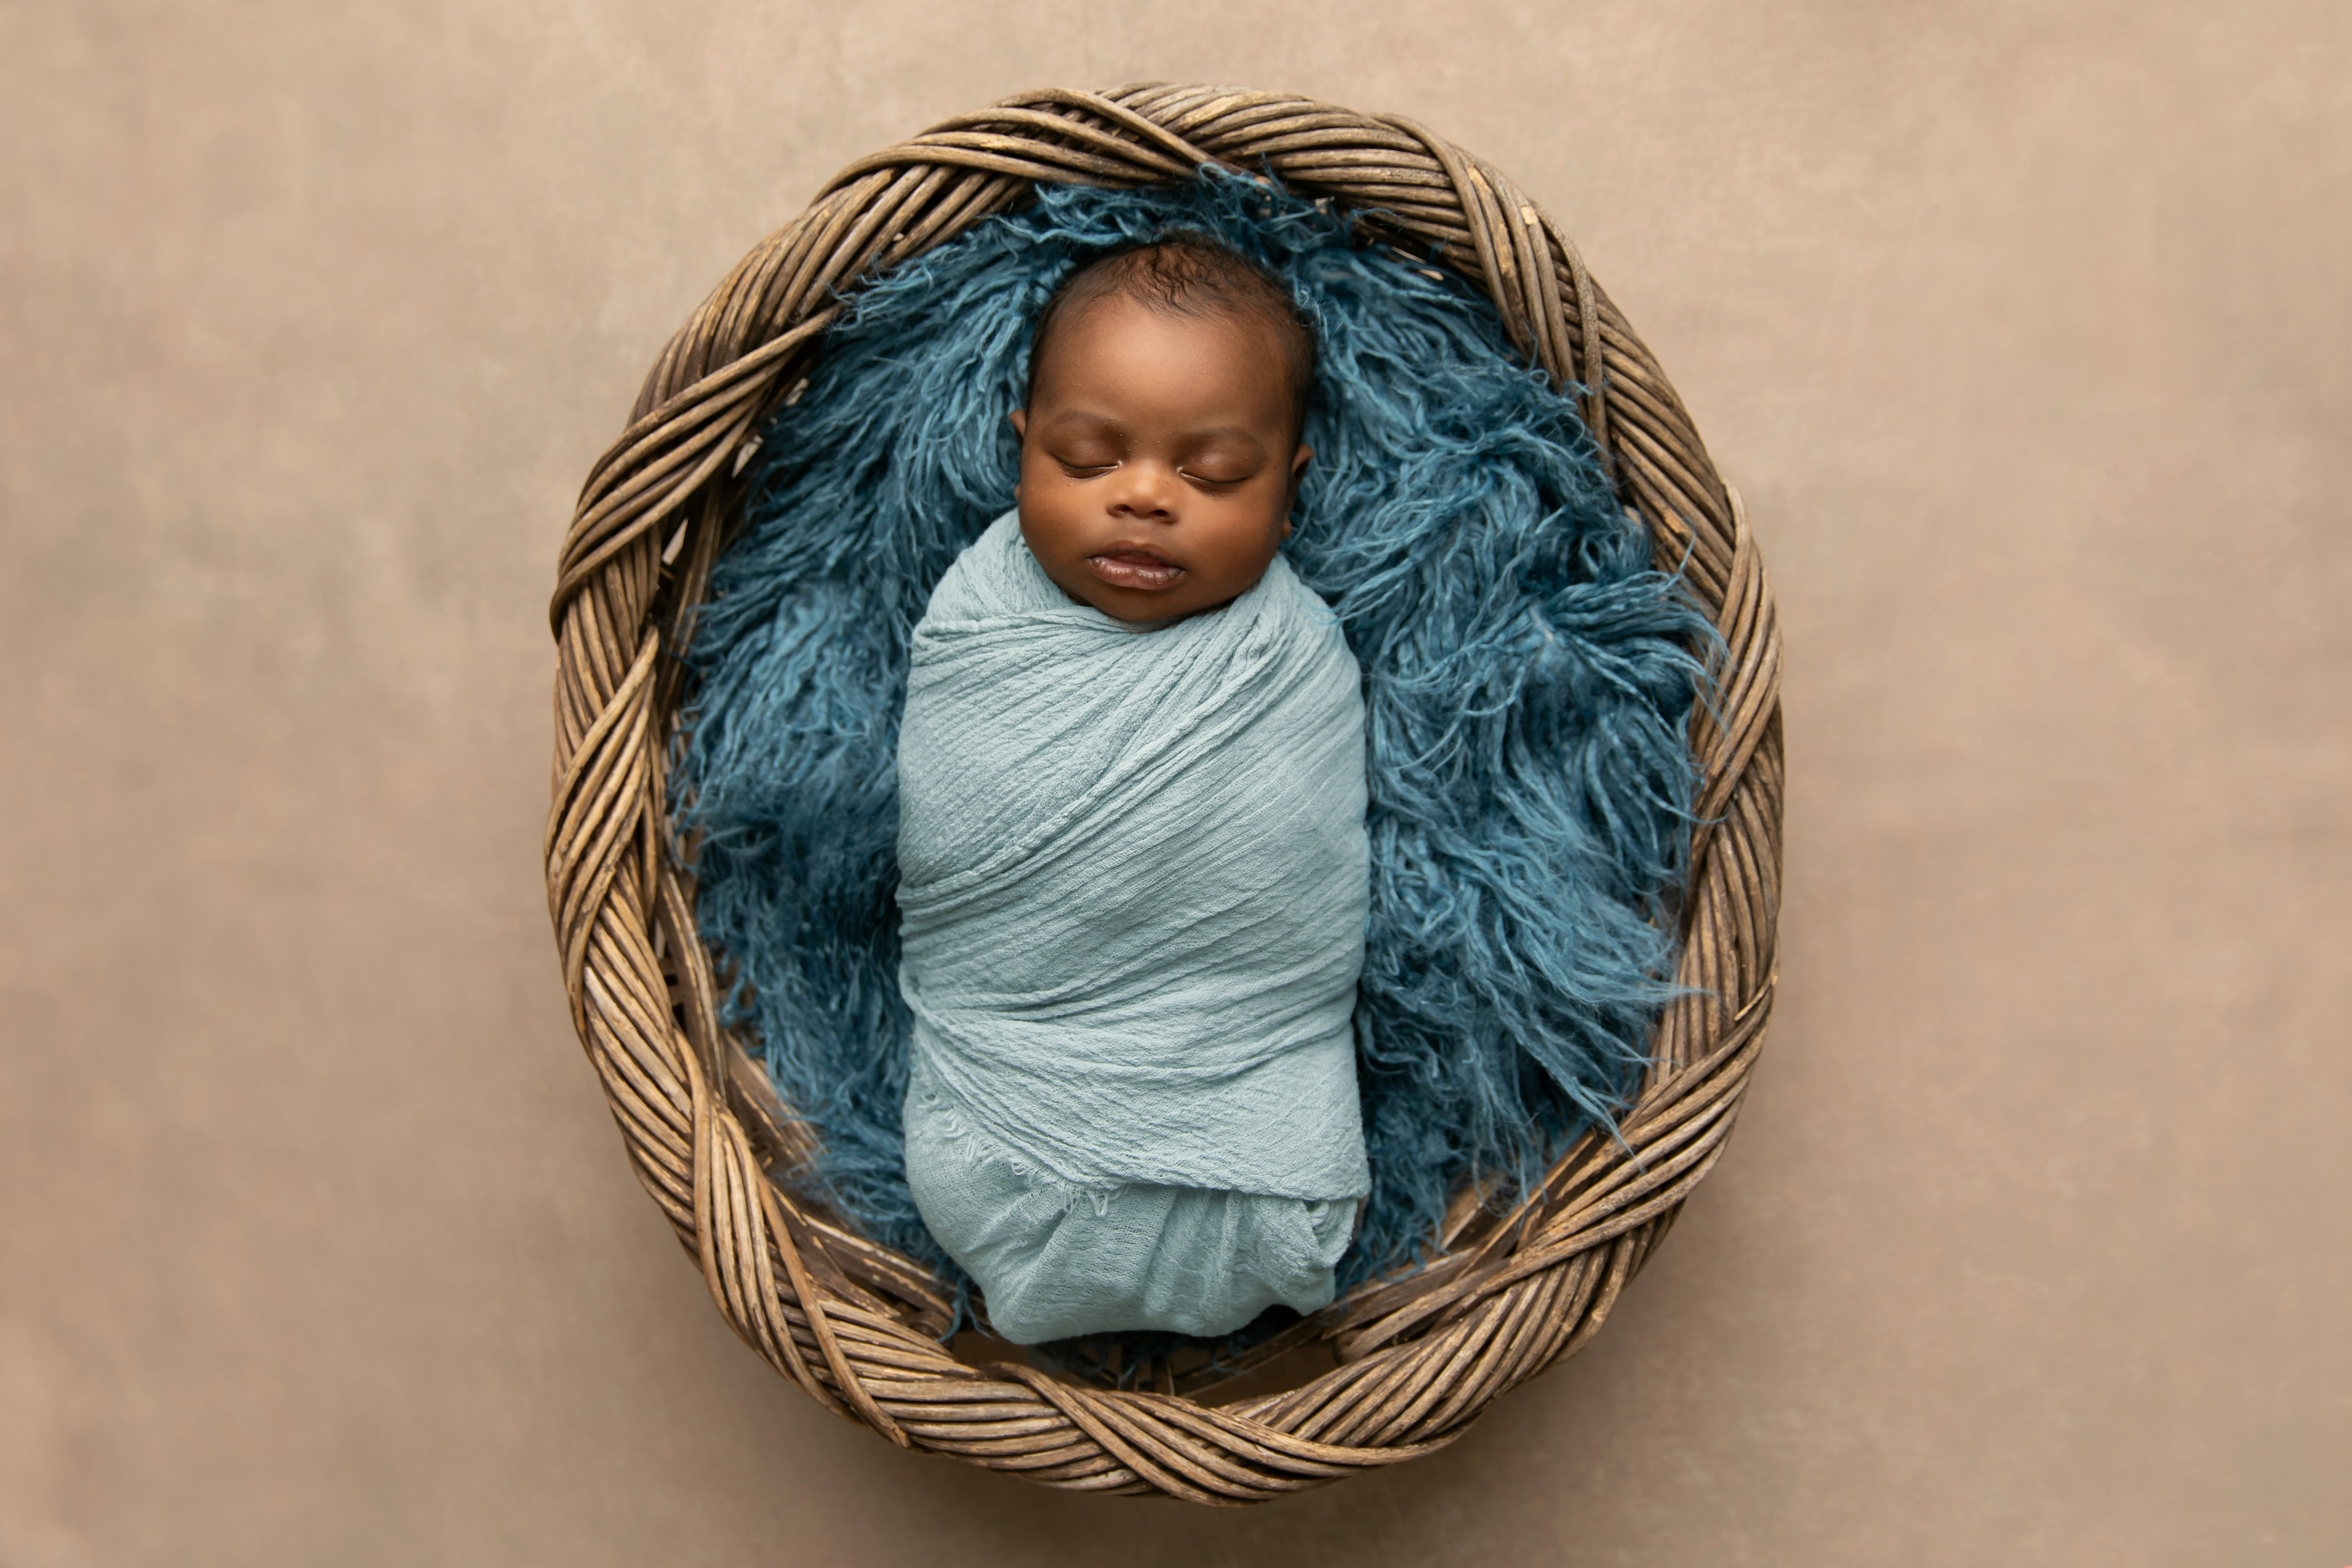 Ein afroamerikanischer neugeborener Junge, der in einem Korb auf einem blauen Teppich liegt und in eine Decke gewickelt ist | Quelle: Shutterstock